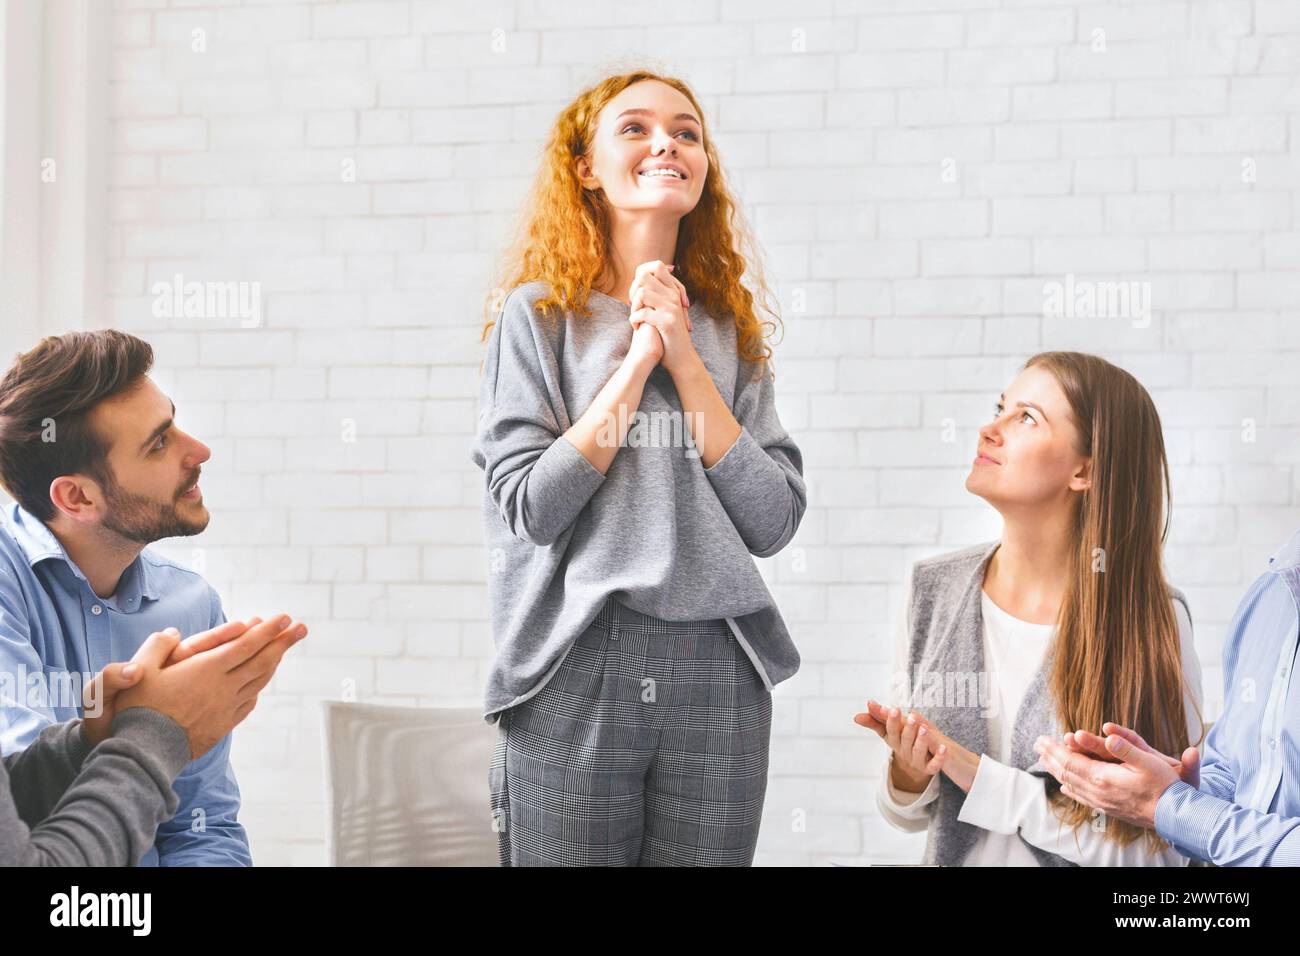 Fröhliche junge Frau, die während einer Psychotherapiesitzung vor der Gruppe spricht Stockfoto